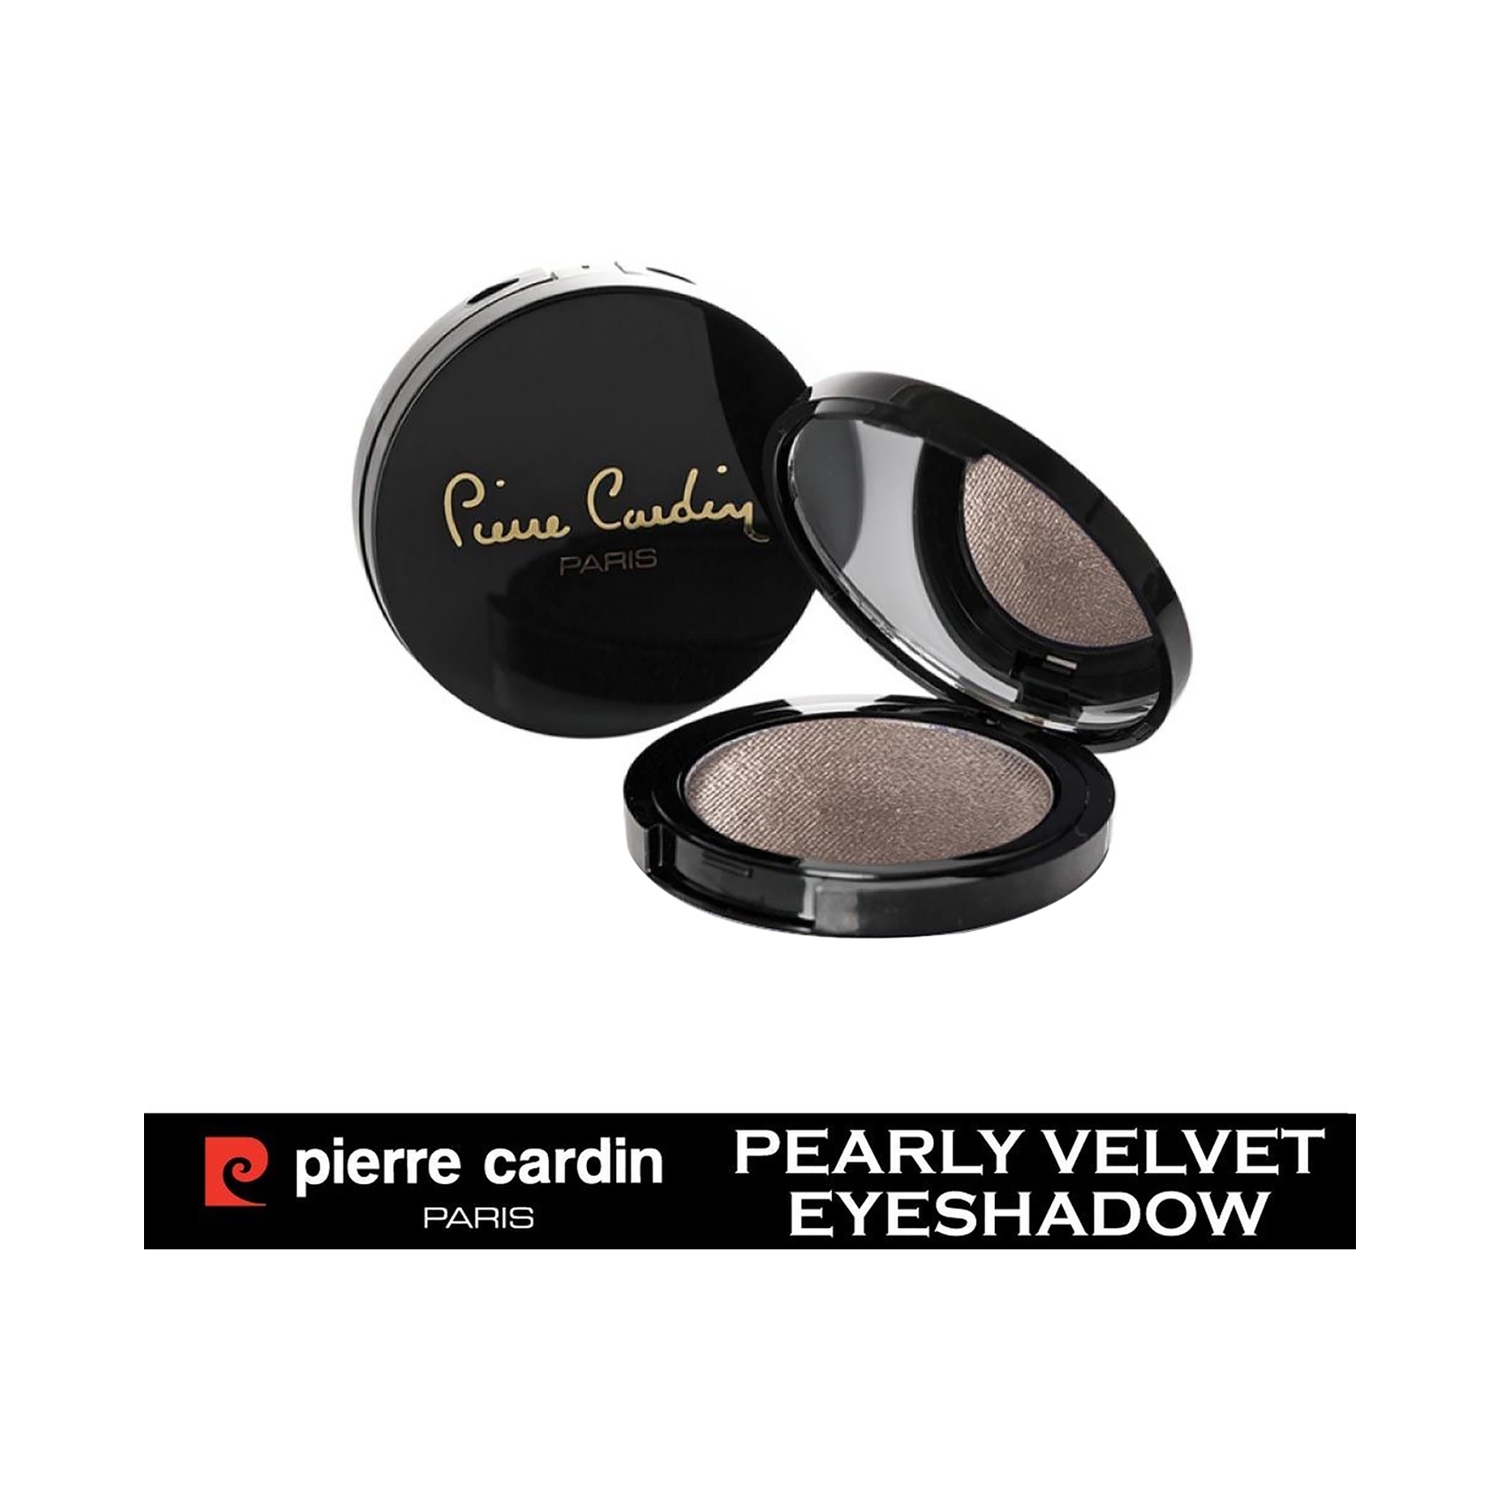 Pierre Cardin Paris | Pierre Cardin Paris Pearly Velvet Eye Shadow - 375 Cashmere (4g)